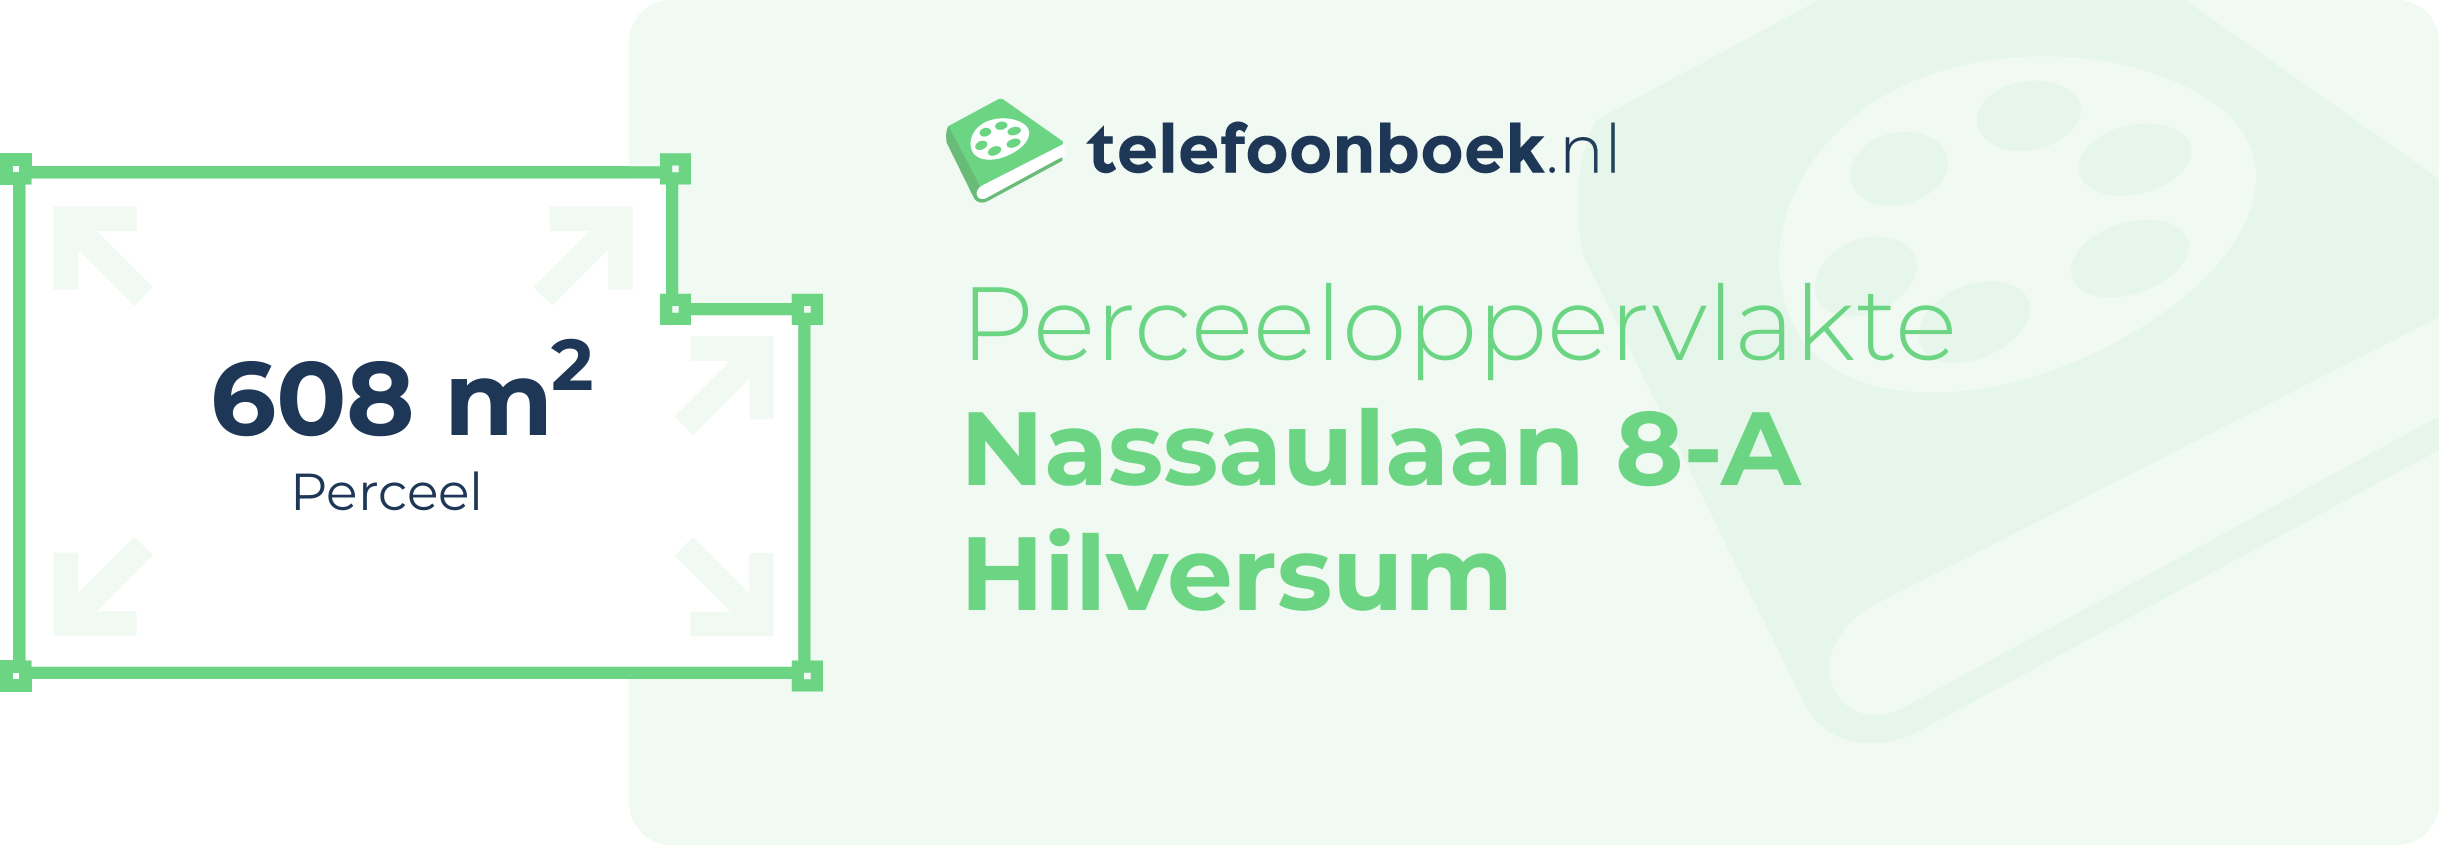 Perceeloppervlakte Nassaulaan 8-A Hilversum